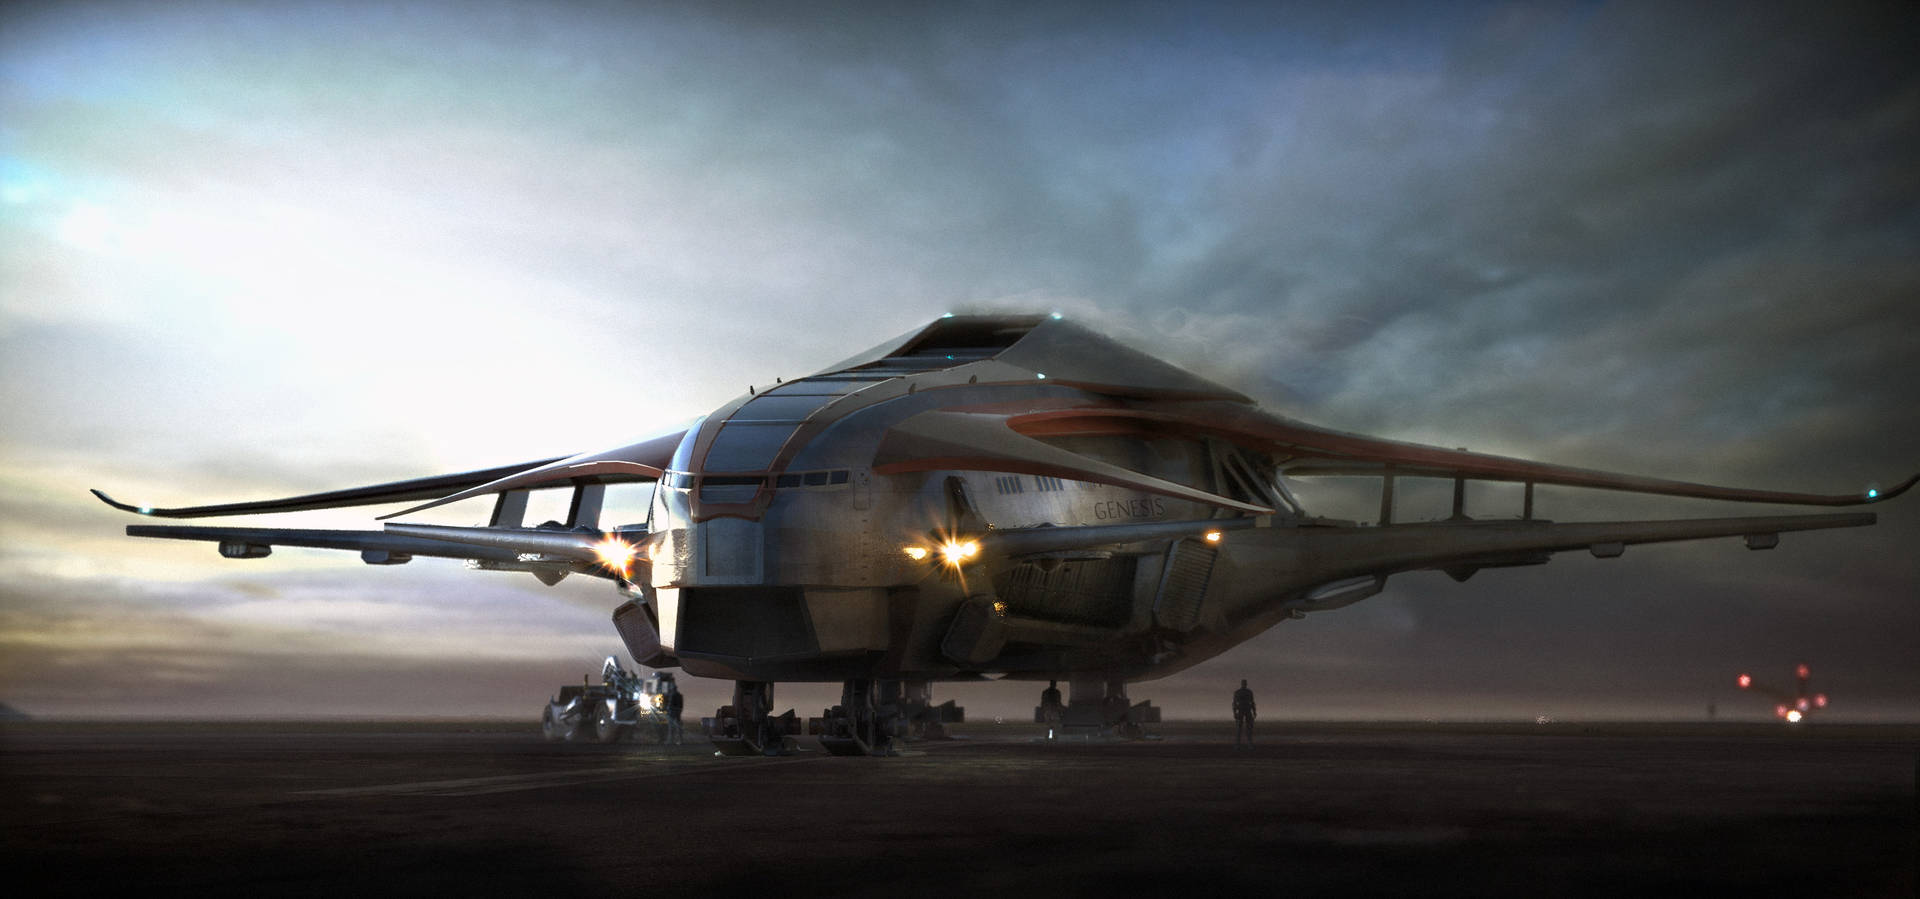 Spacexstarship: Il Futuro Della Colonizzazione Umana Sfondo